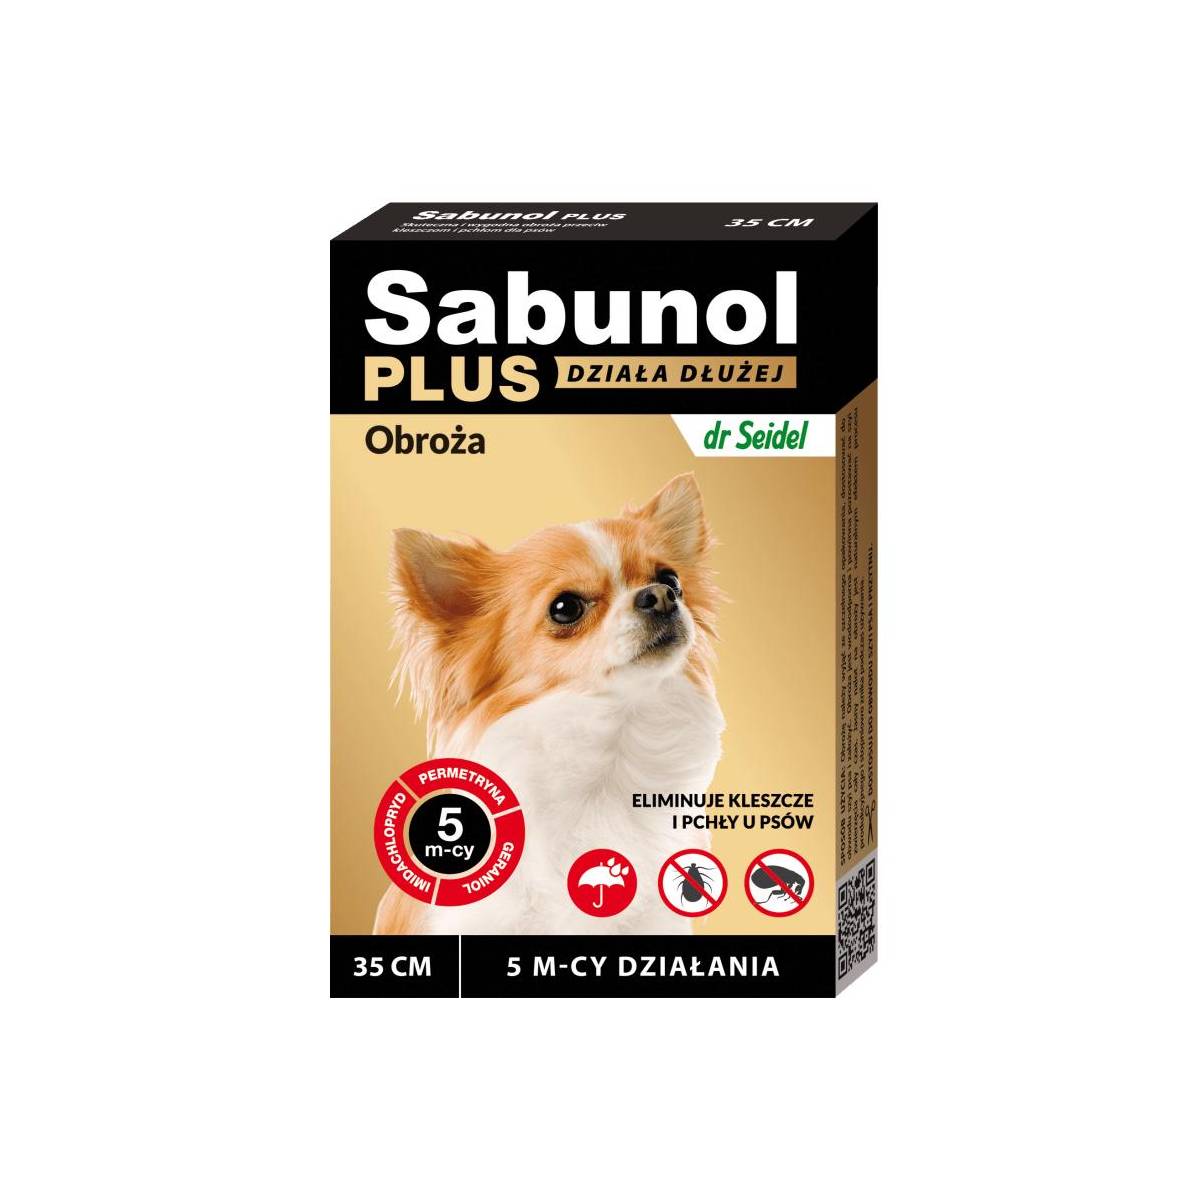 Sabunol plus obroża przeciw pchłom i kleszczom dla psa 35 cm